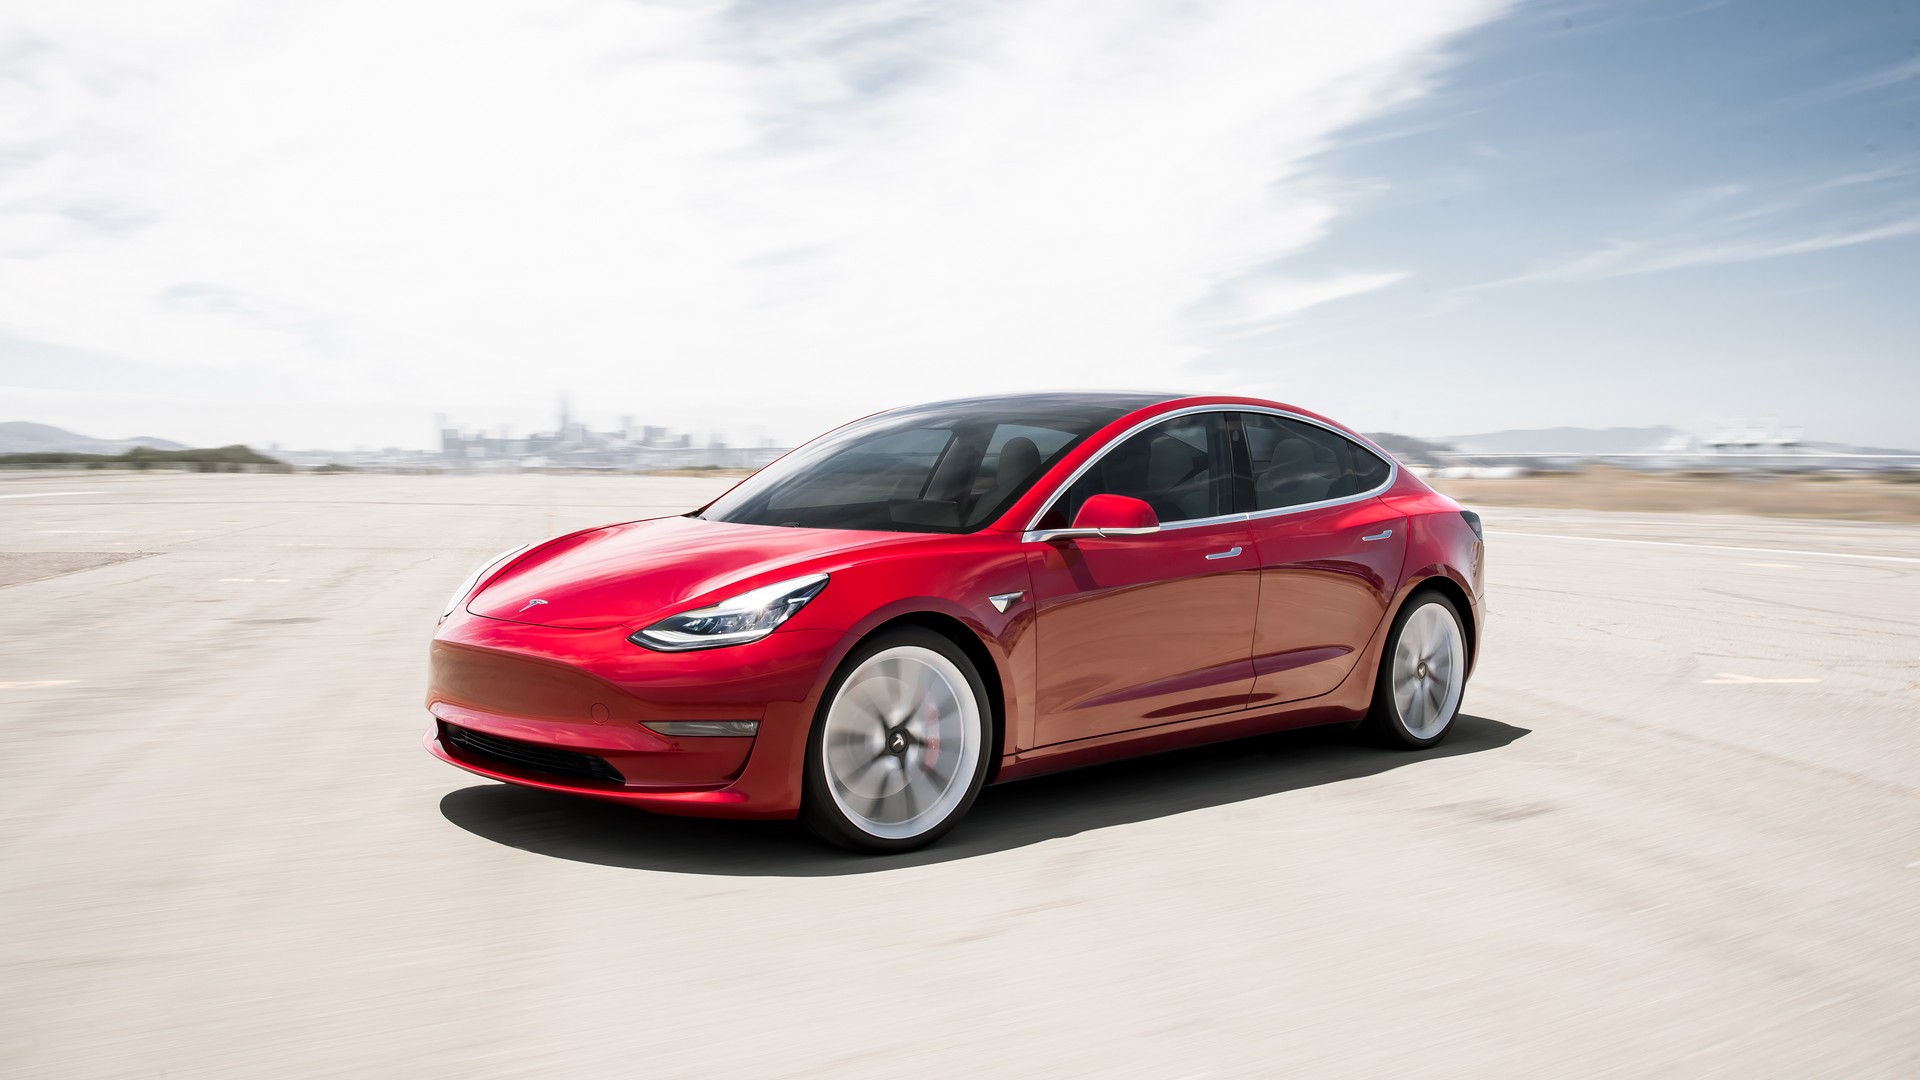 ROAD TEST: 2018 Tesla Model 3 RWD Long-Range Battery